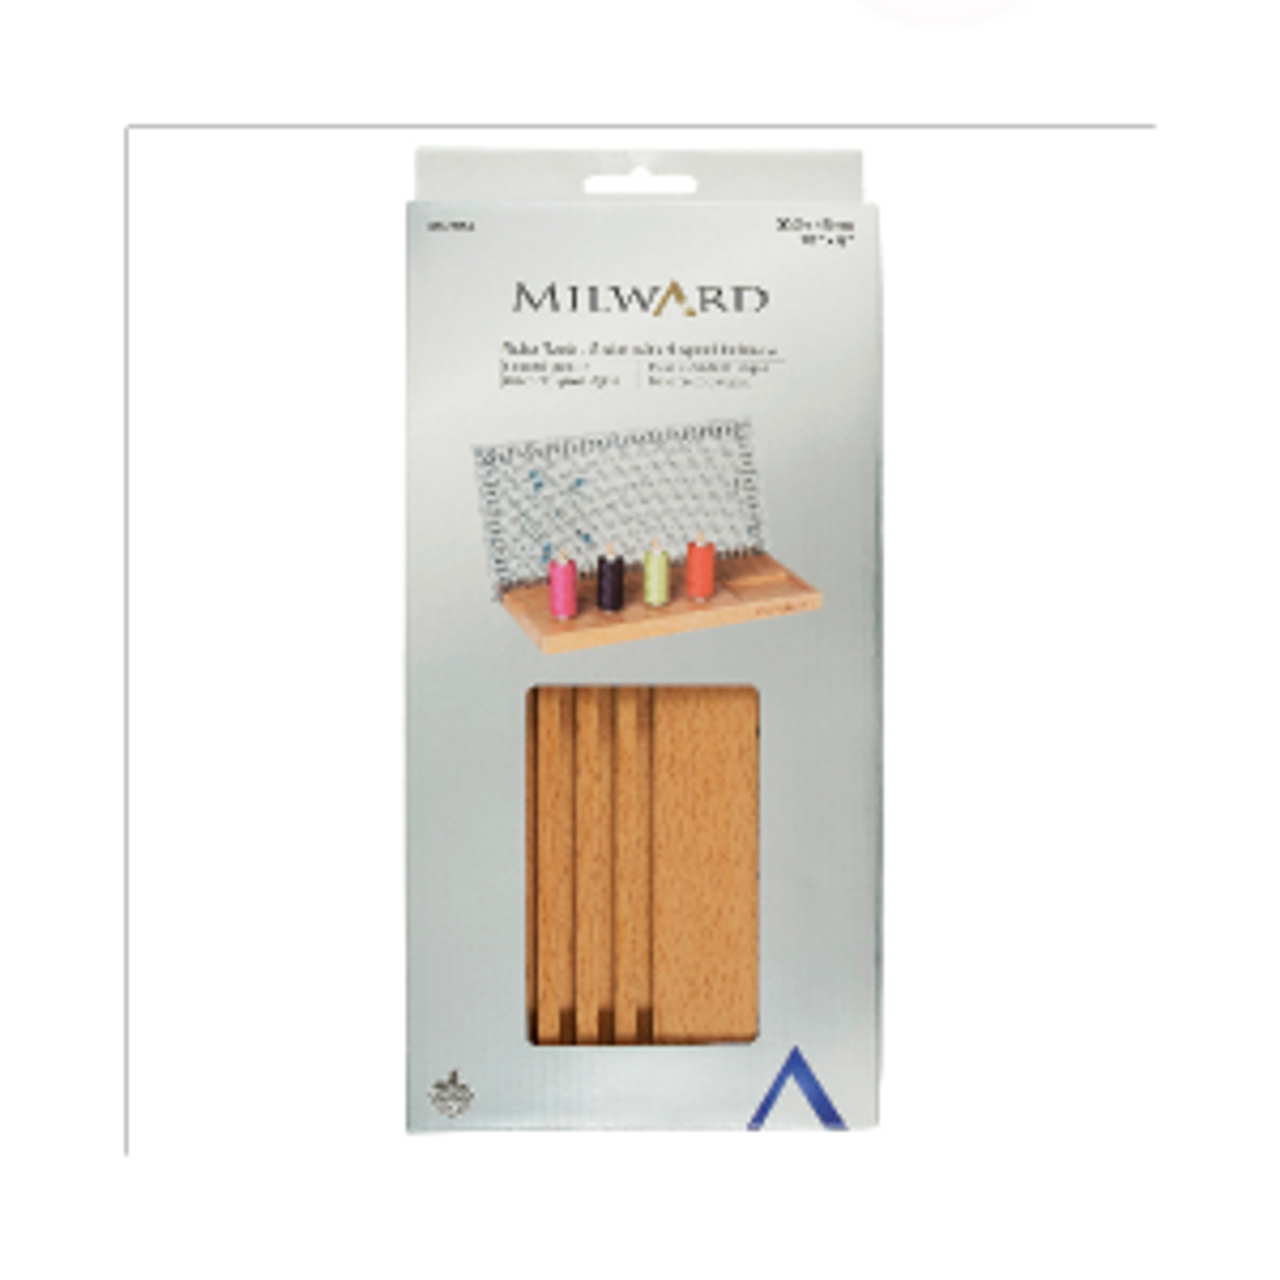 Milwark 6 Slot Ruler Rack with Storage in package